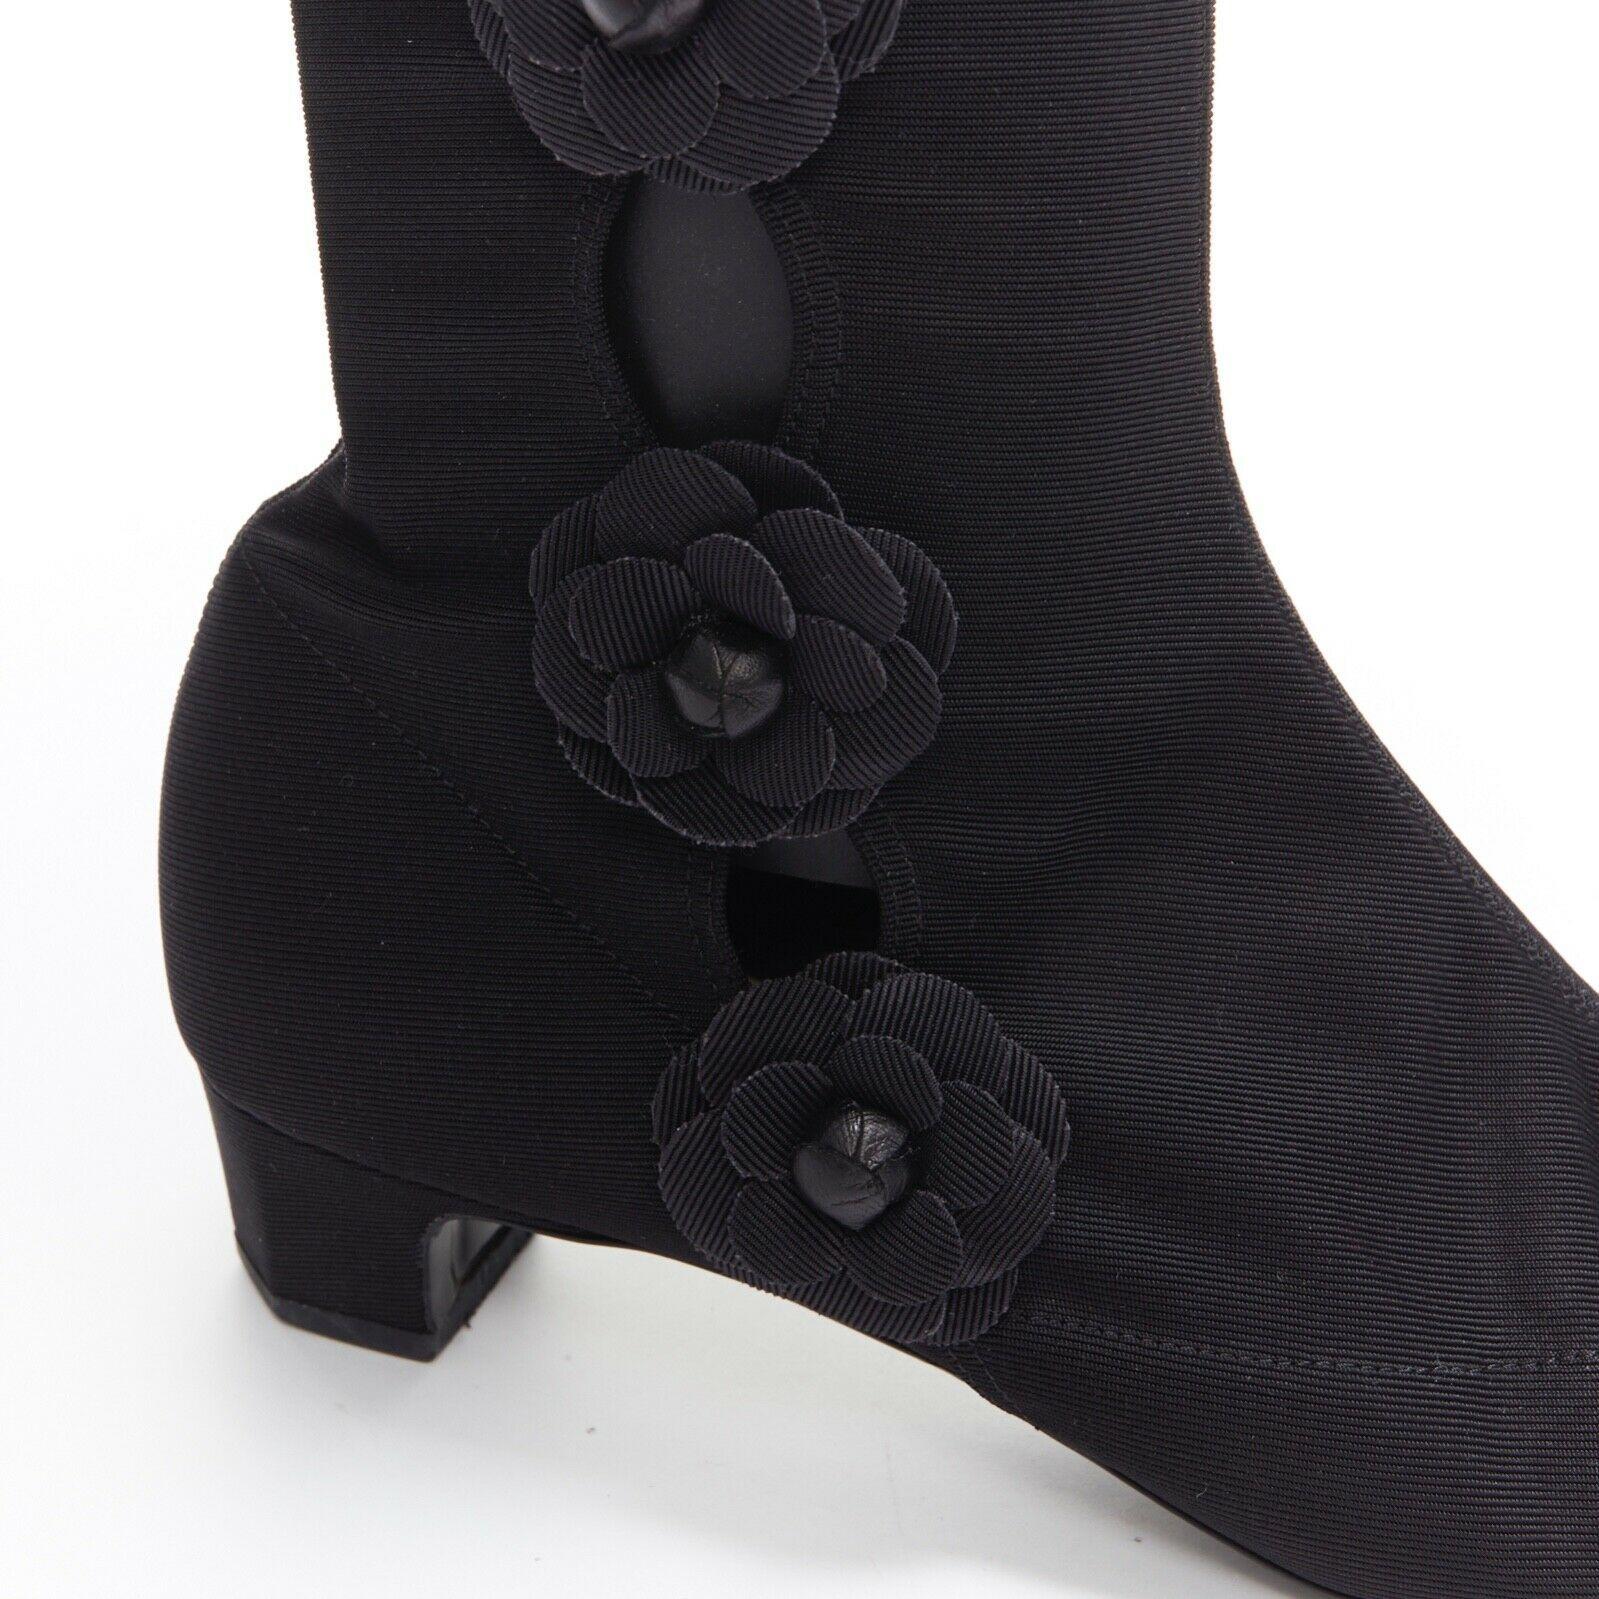 CHANEL black Camellia applique satin toe cap stretch fit flat knee boots EU38.5 2